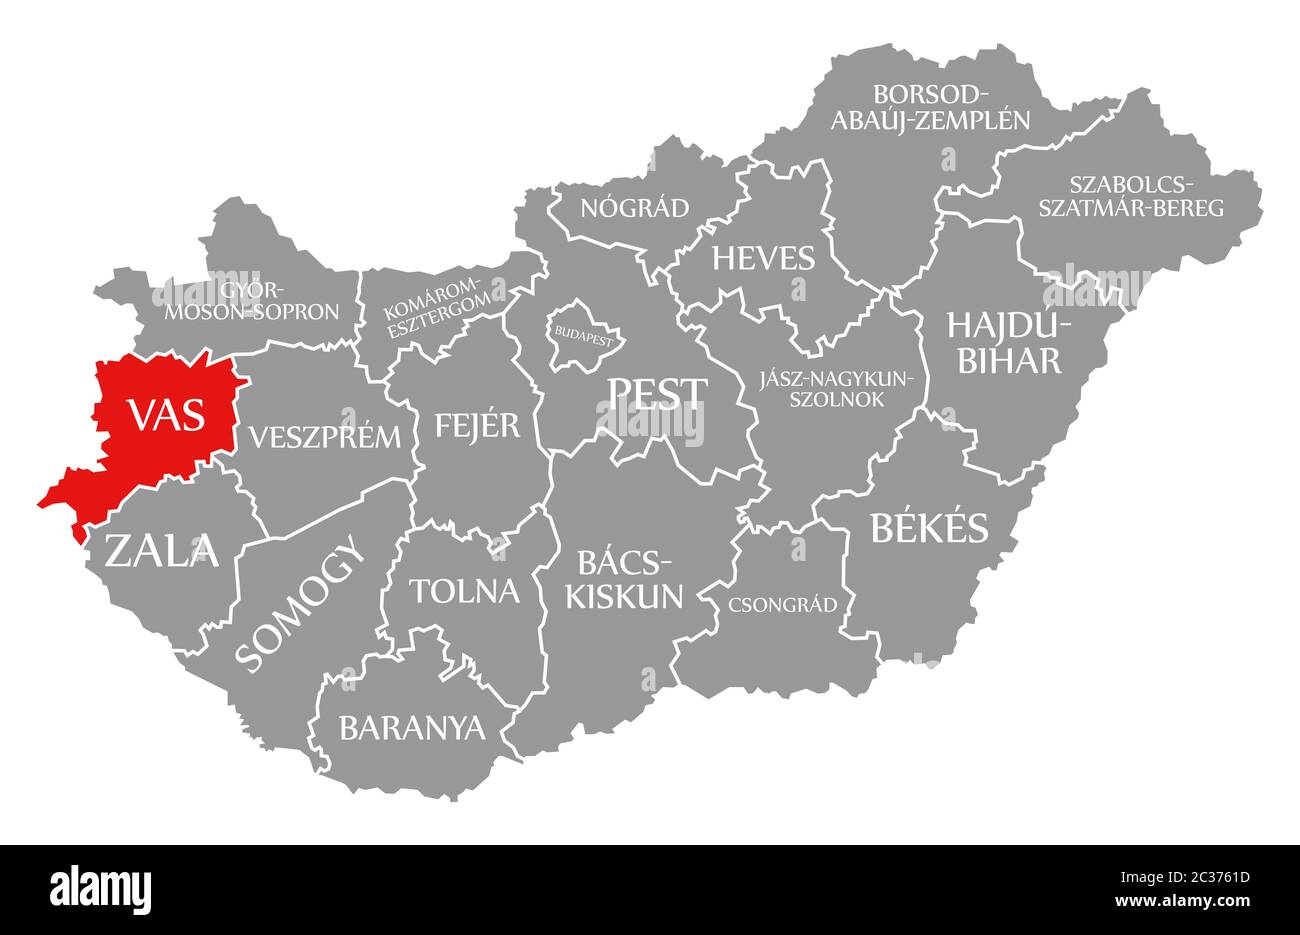 Vas evidenziata in rosso nella mappa di Ungheria Foto Stock